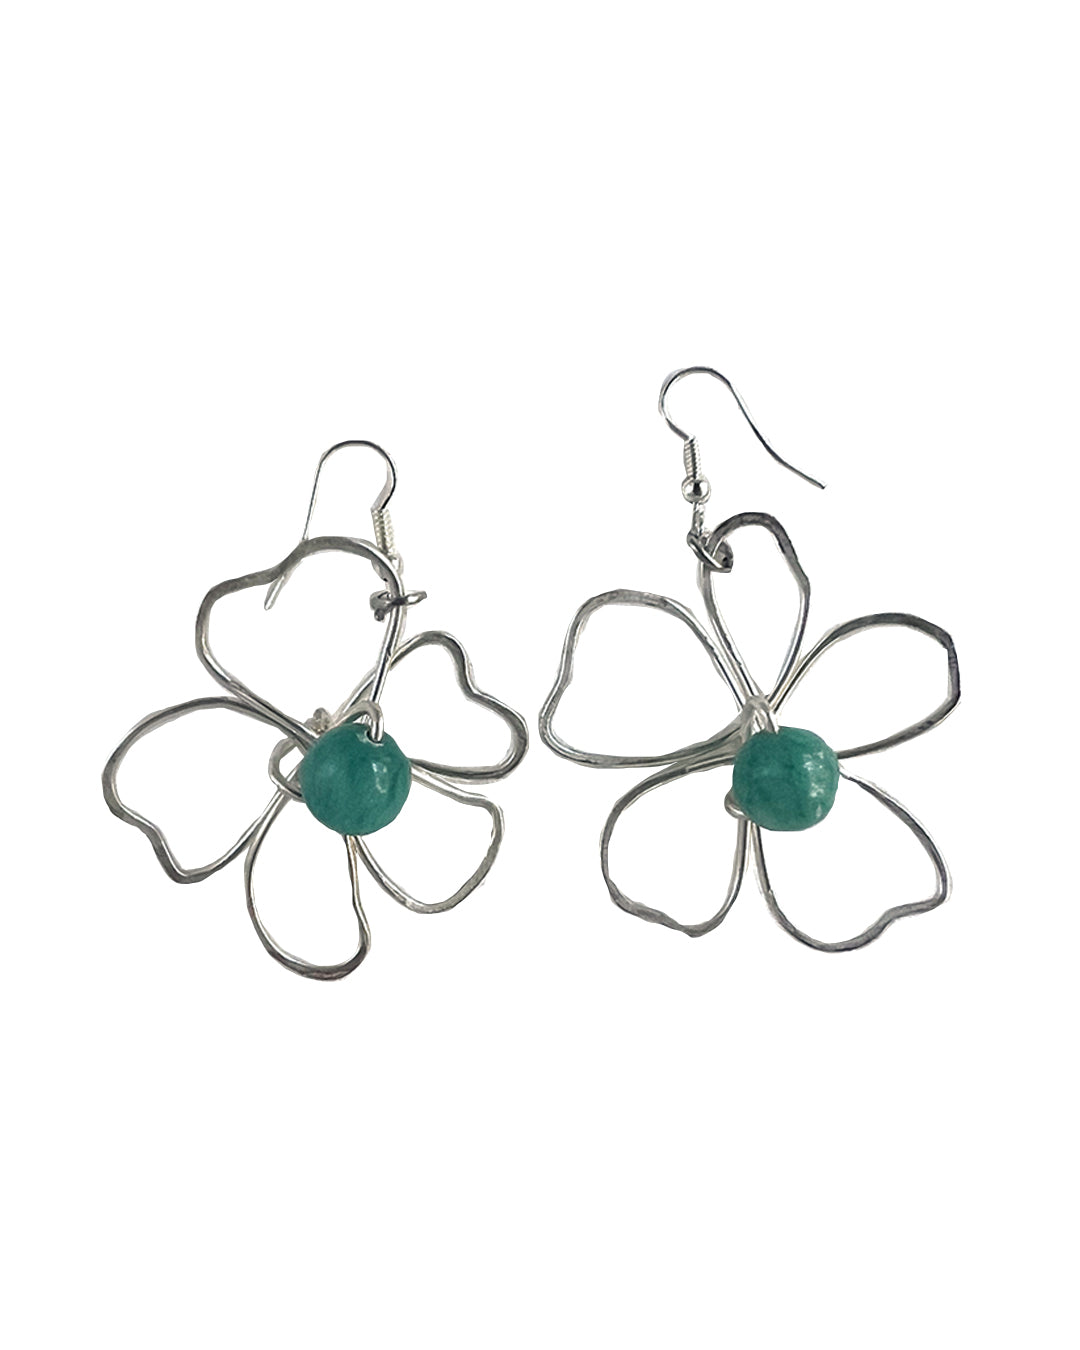 Silver Flower Earrings - Medium Blue Jade Earrings